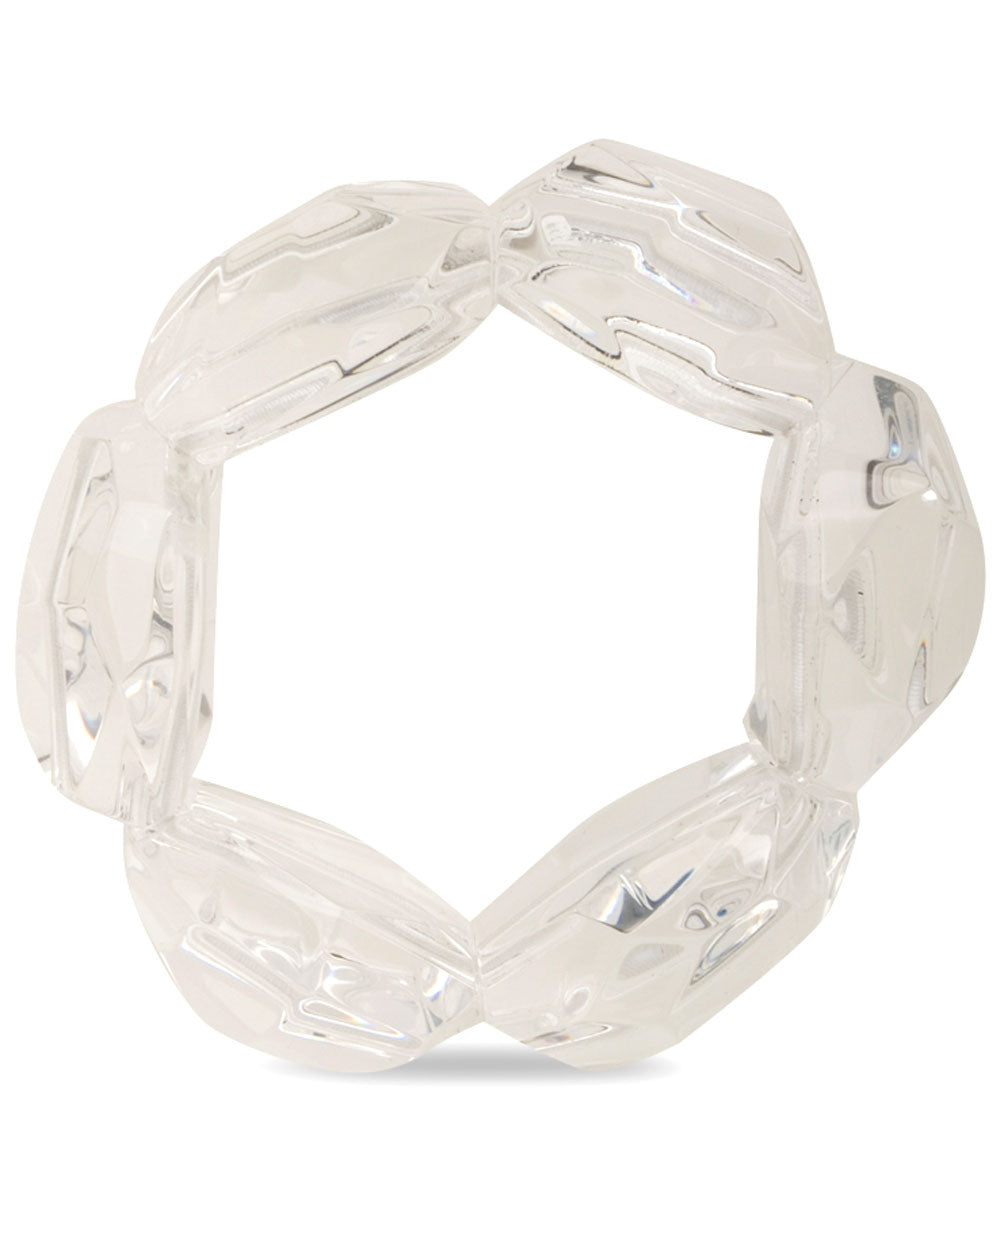 Clear Acrylic Stretch Bracelet